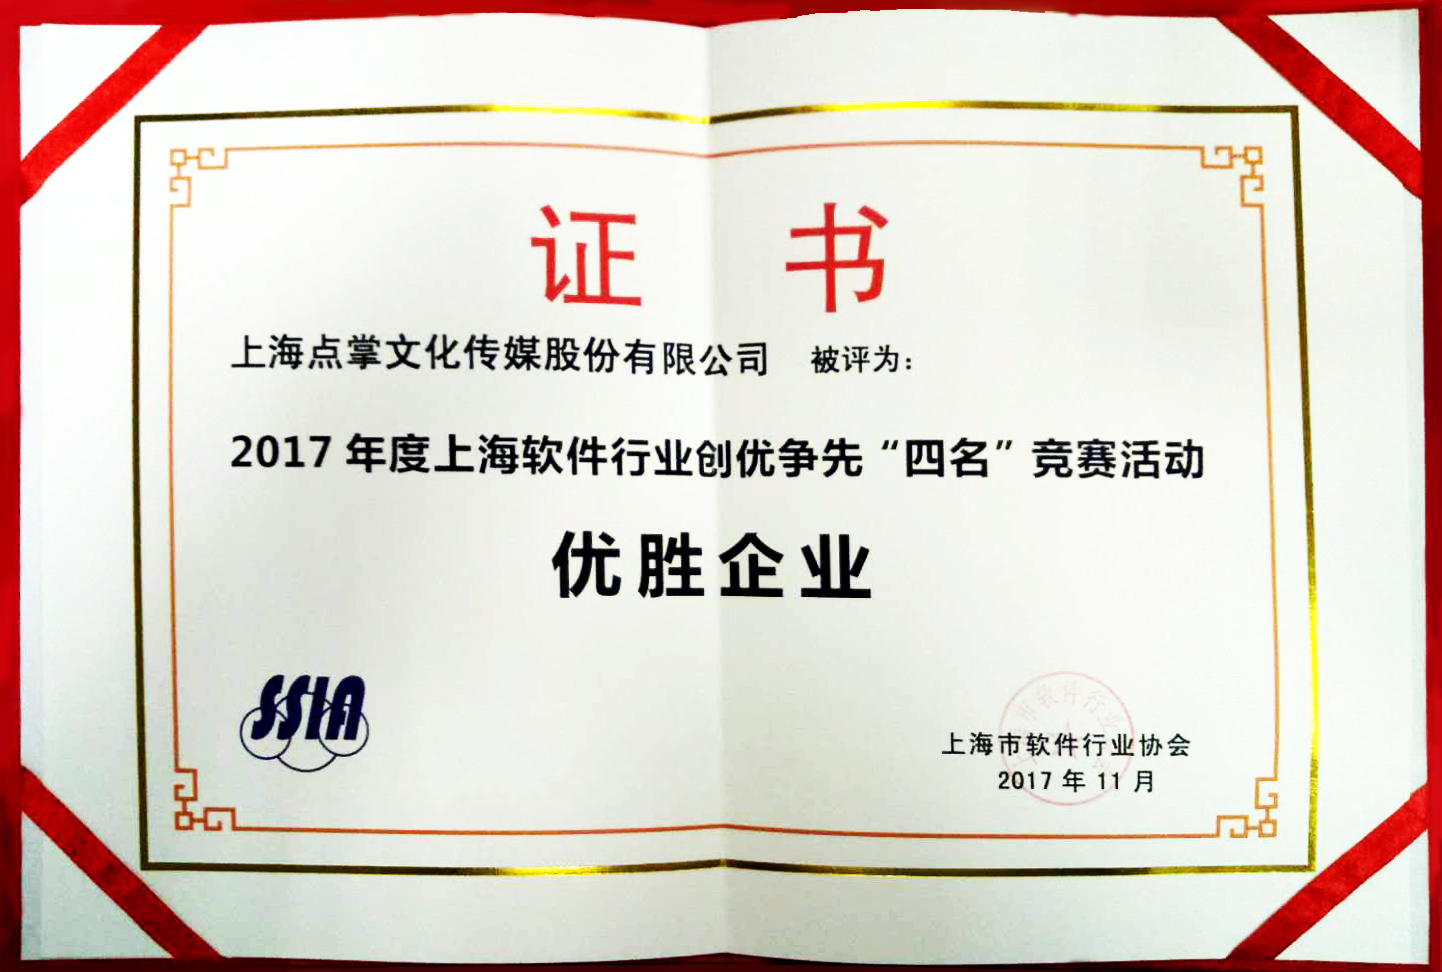 上海点掌文化传媒股份有限公司连续两年蝉联明星软件企业